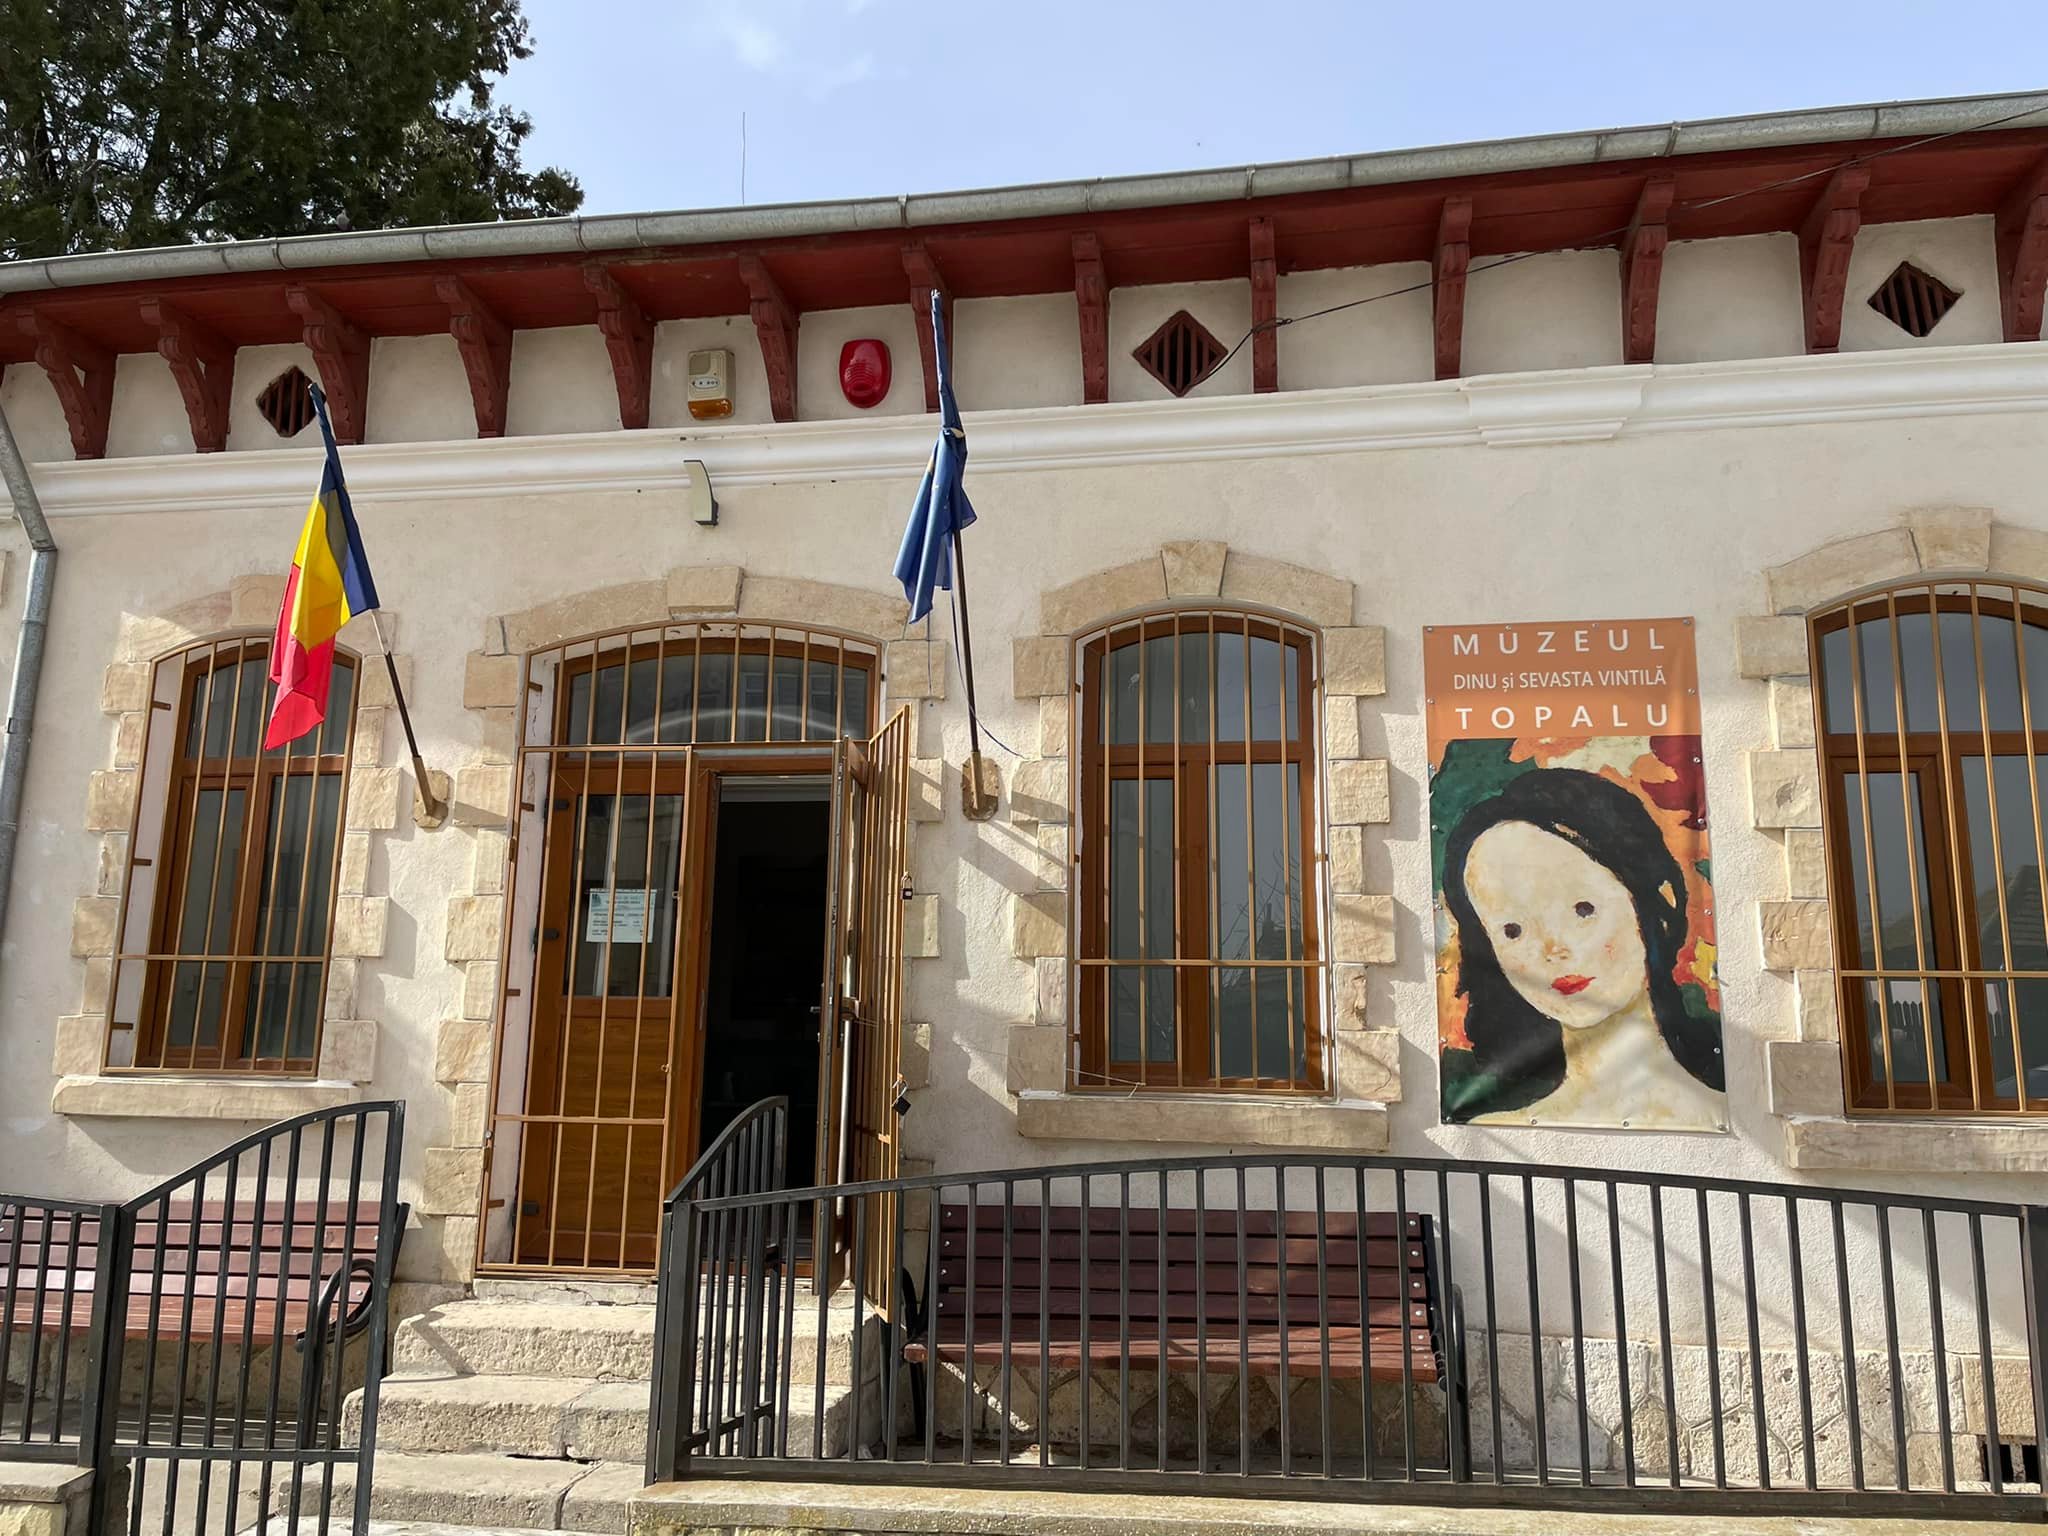 Muzeul de arta Dinu şi Sevasta Vintilă, Topalu, Constanta